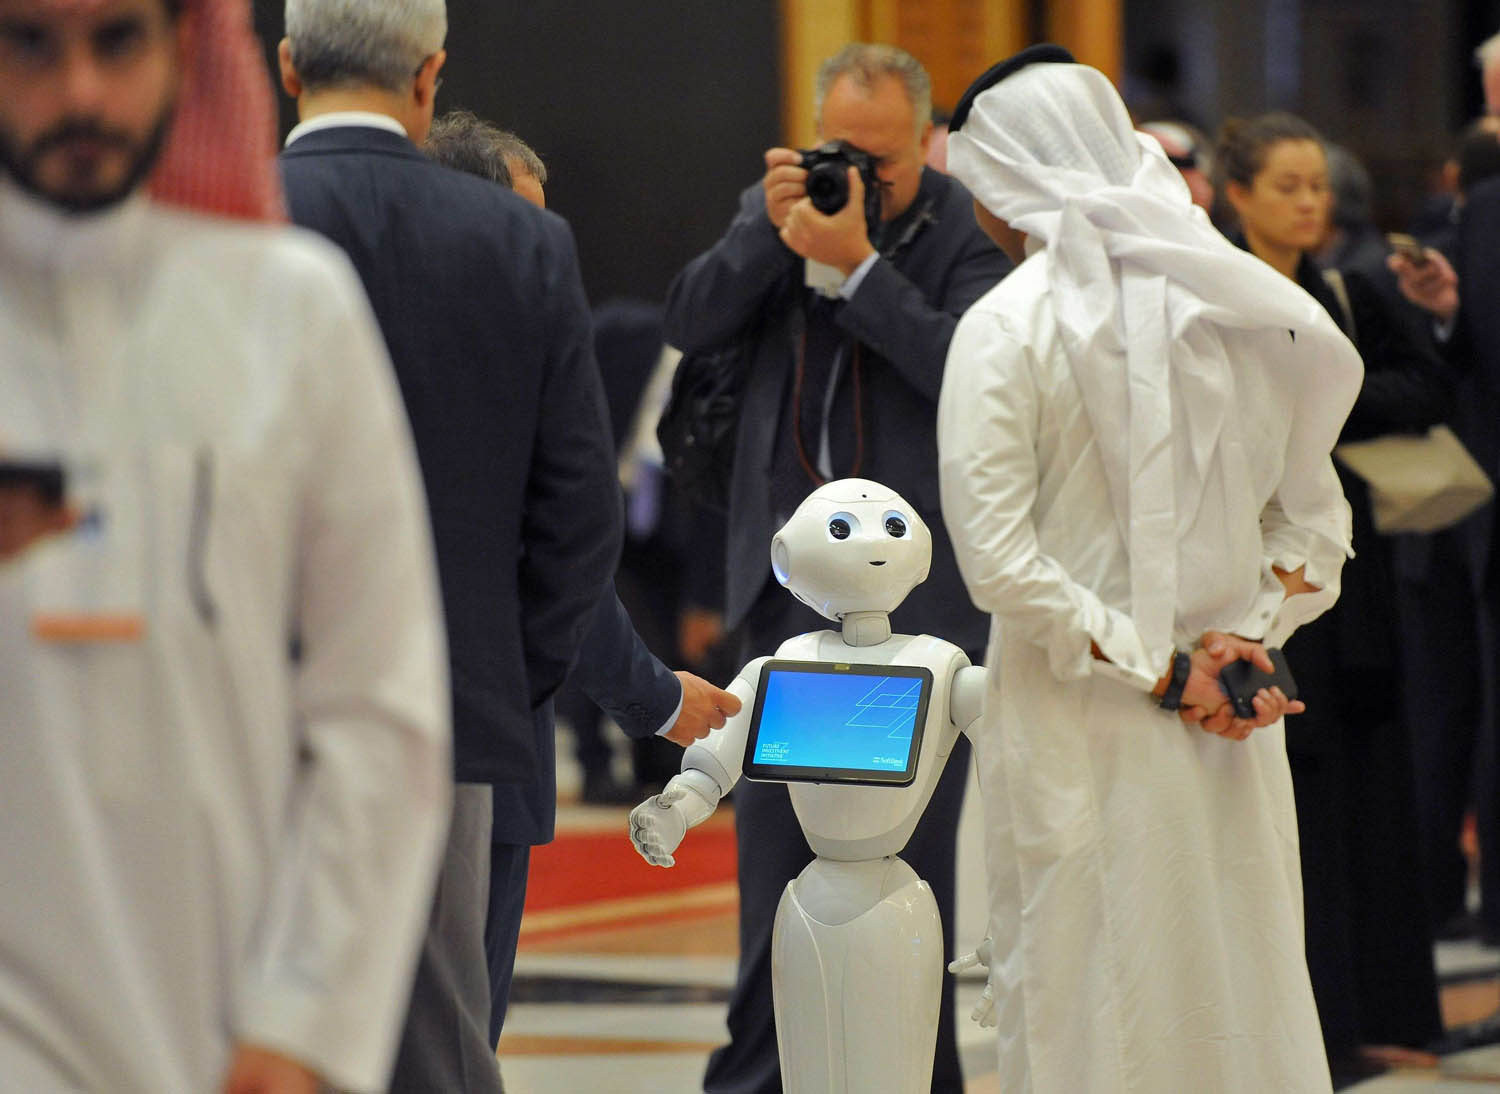 سعودي ينظر إلى روبوت في مؤتمر بالرياض